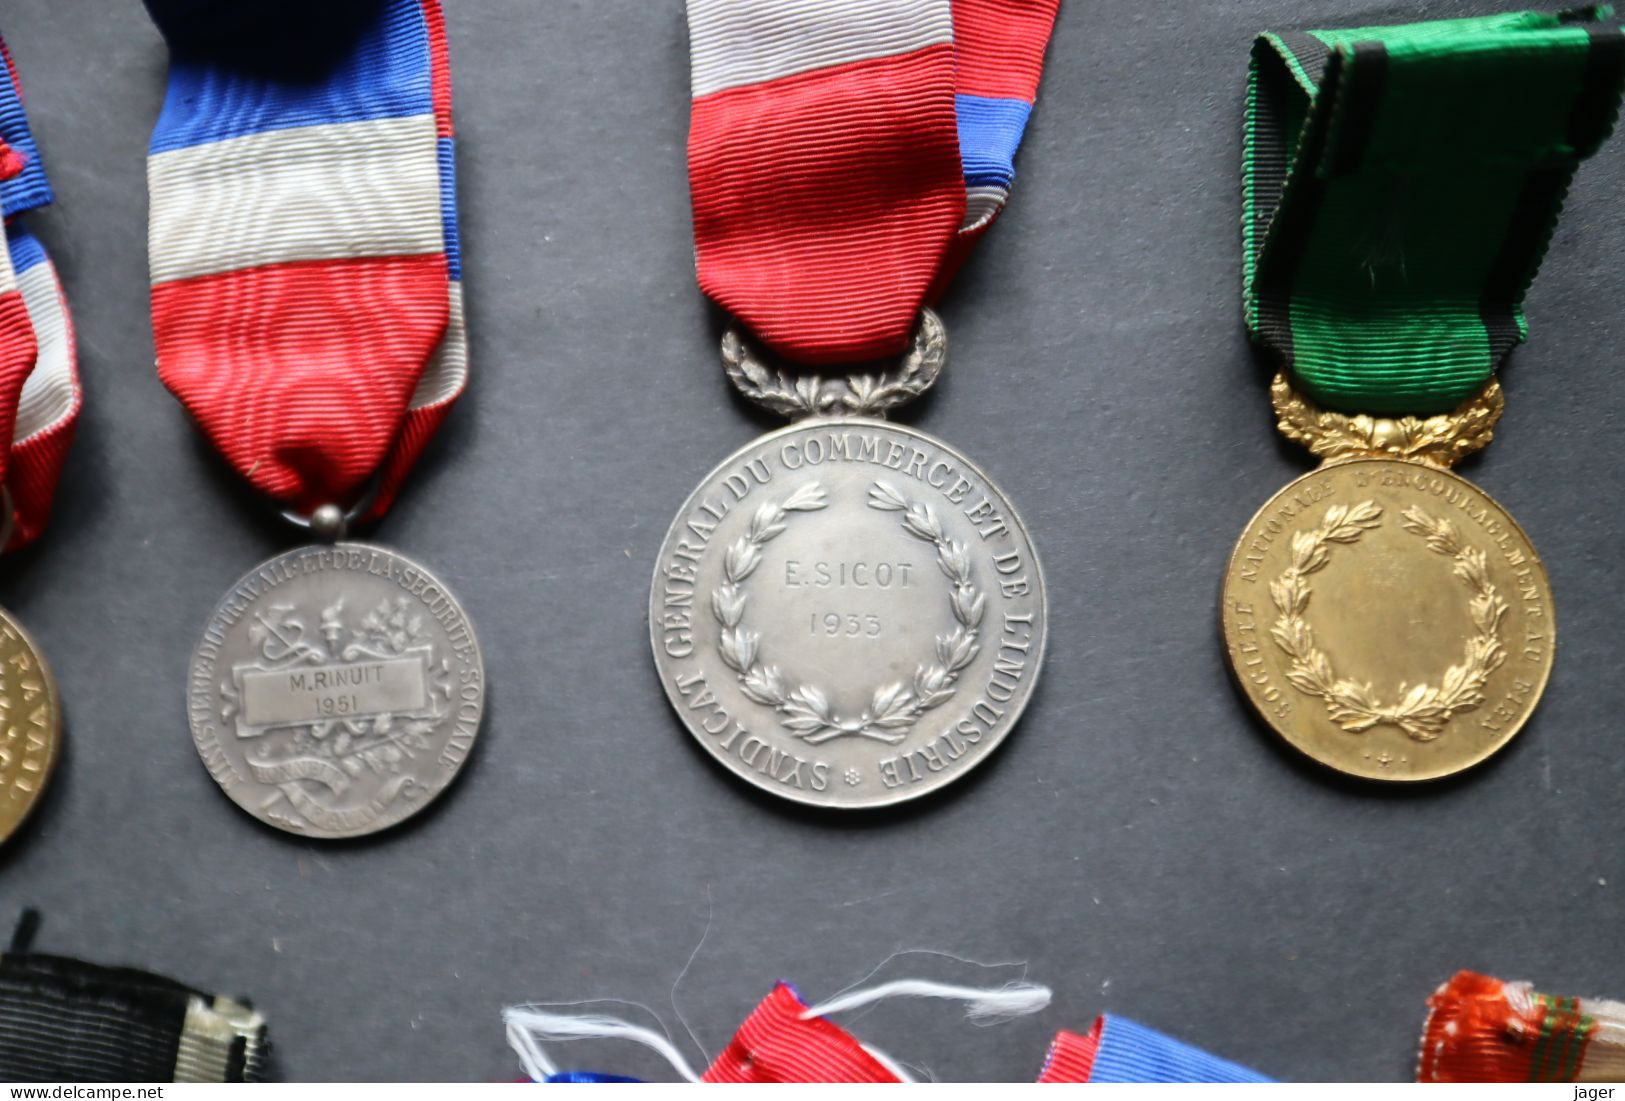 Lot de médailles anciennes certaines attribuées ou en argent